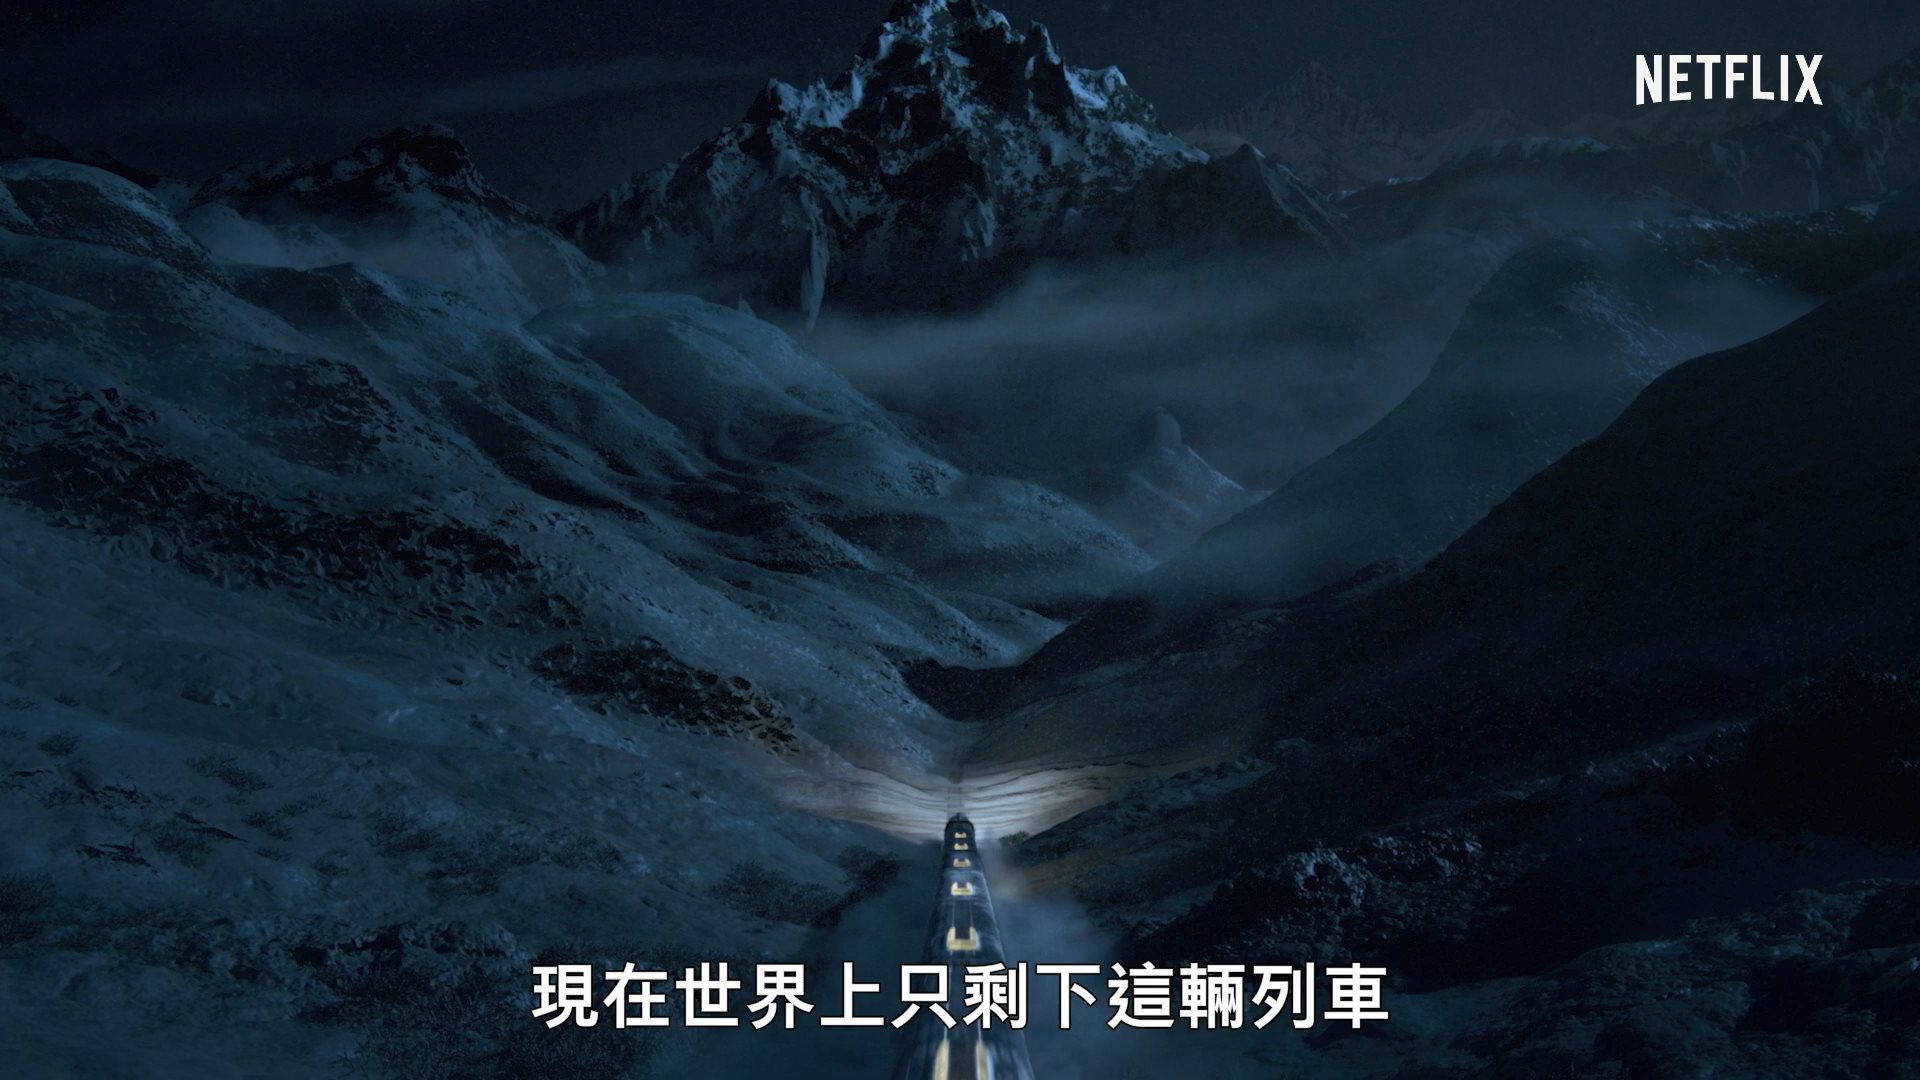 奉俊昊同名电影改编 剧版《雪国列车》正式预告放出